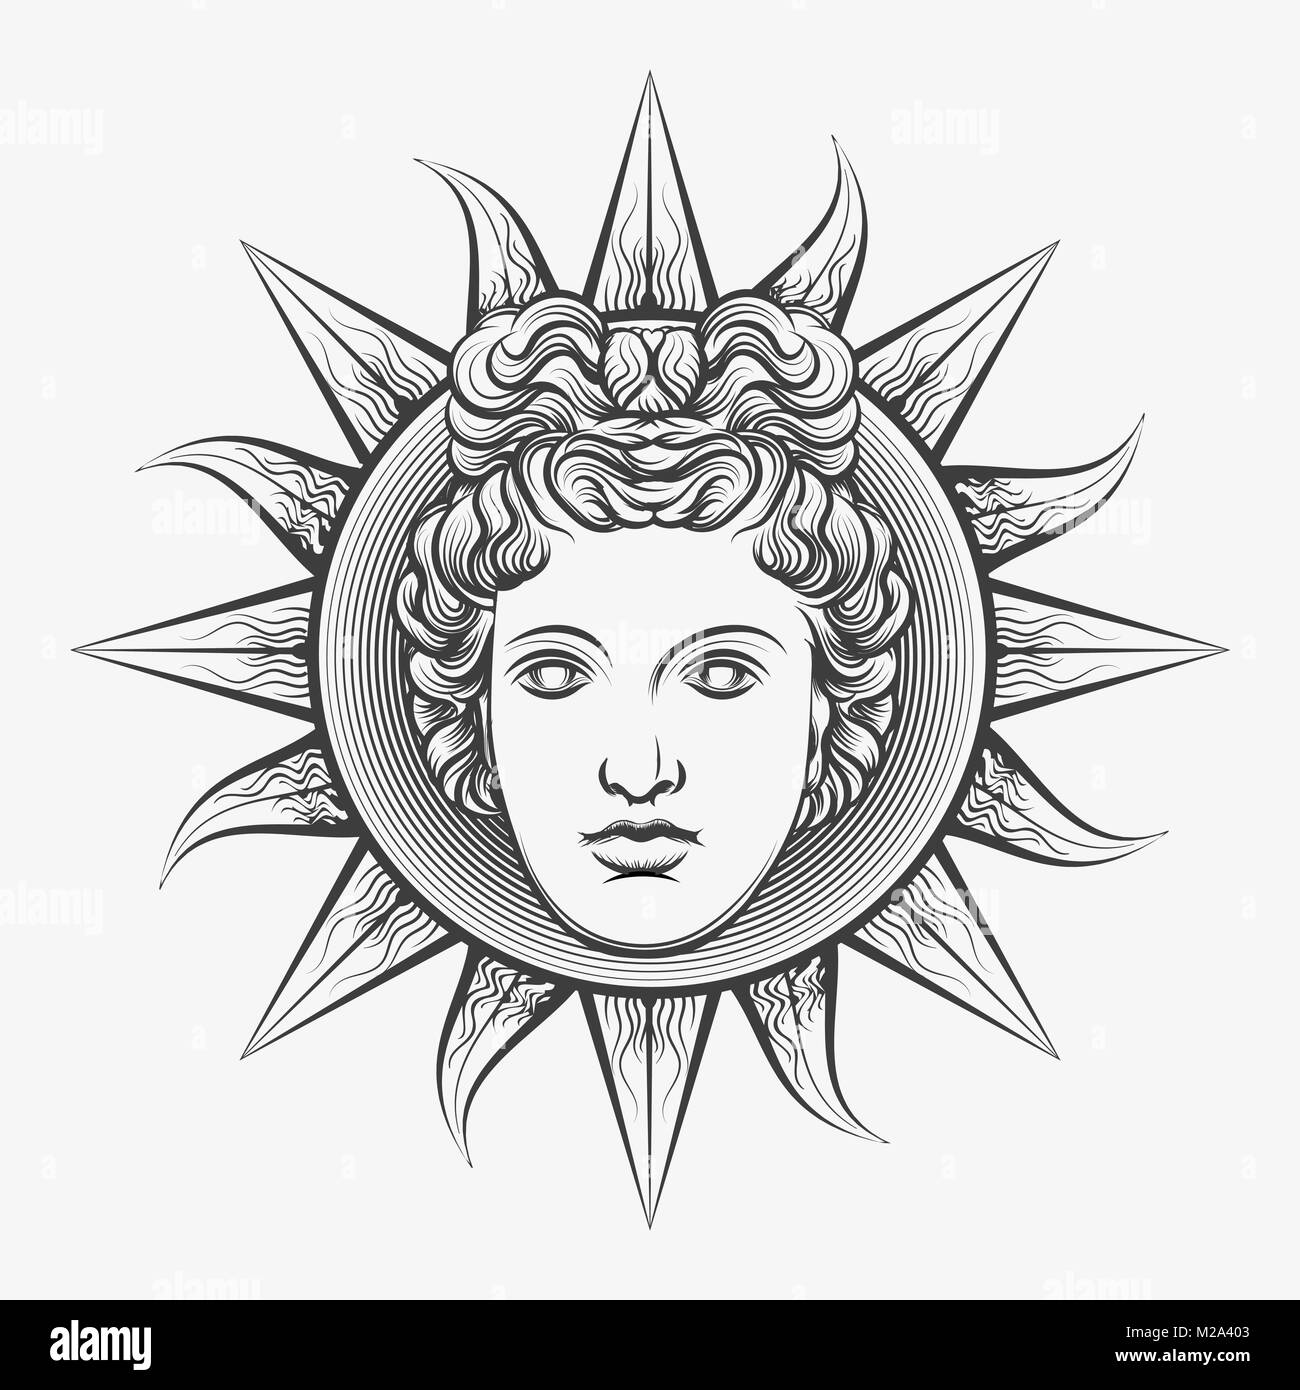 Apollo sun. Antique roman apollo sun face god engraving vector ...